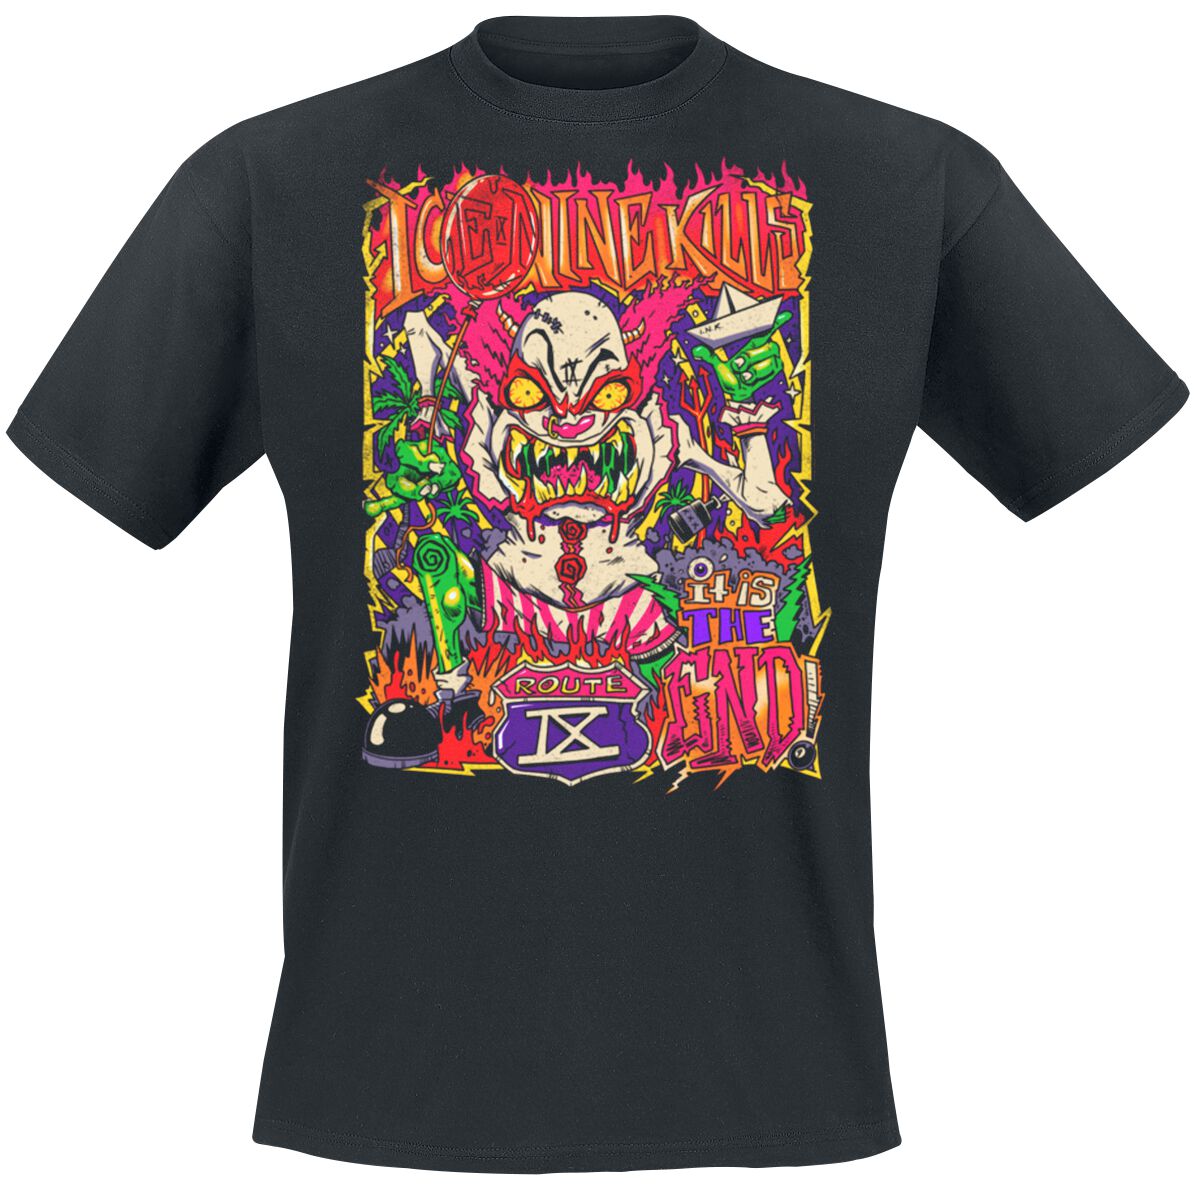 Ice Nine Kills T-Shirt - Clown Zombie - S bis 4XL - für Männer - Größe XXL - schwarz  - Lizenziertes Merchandise!